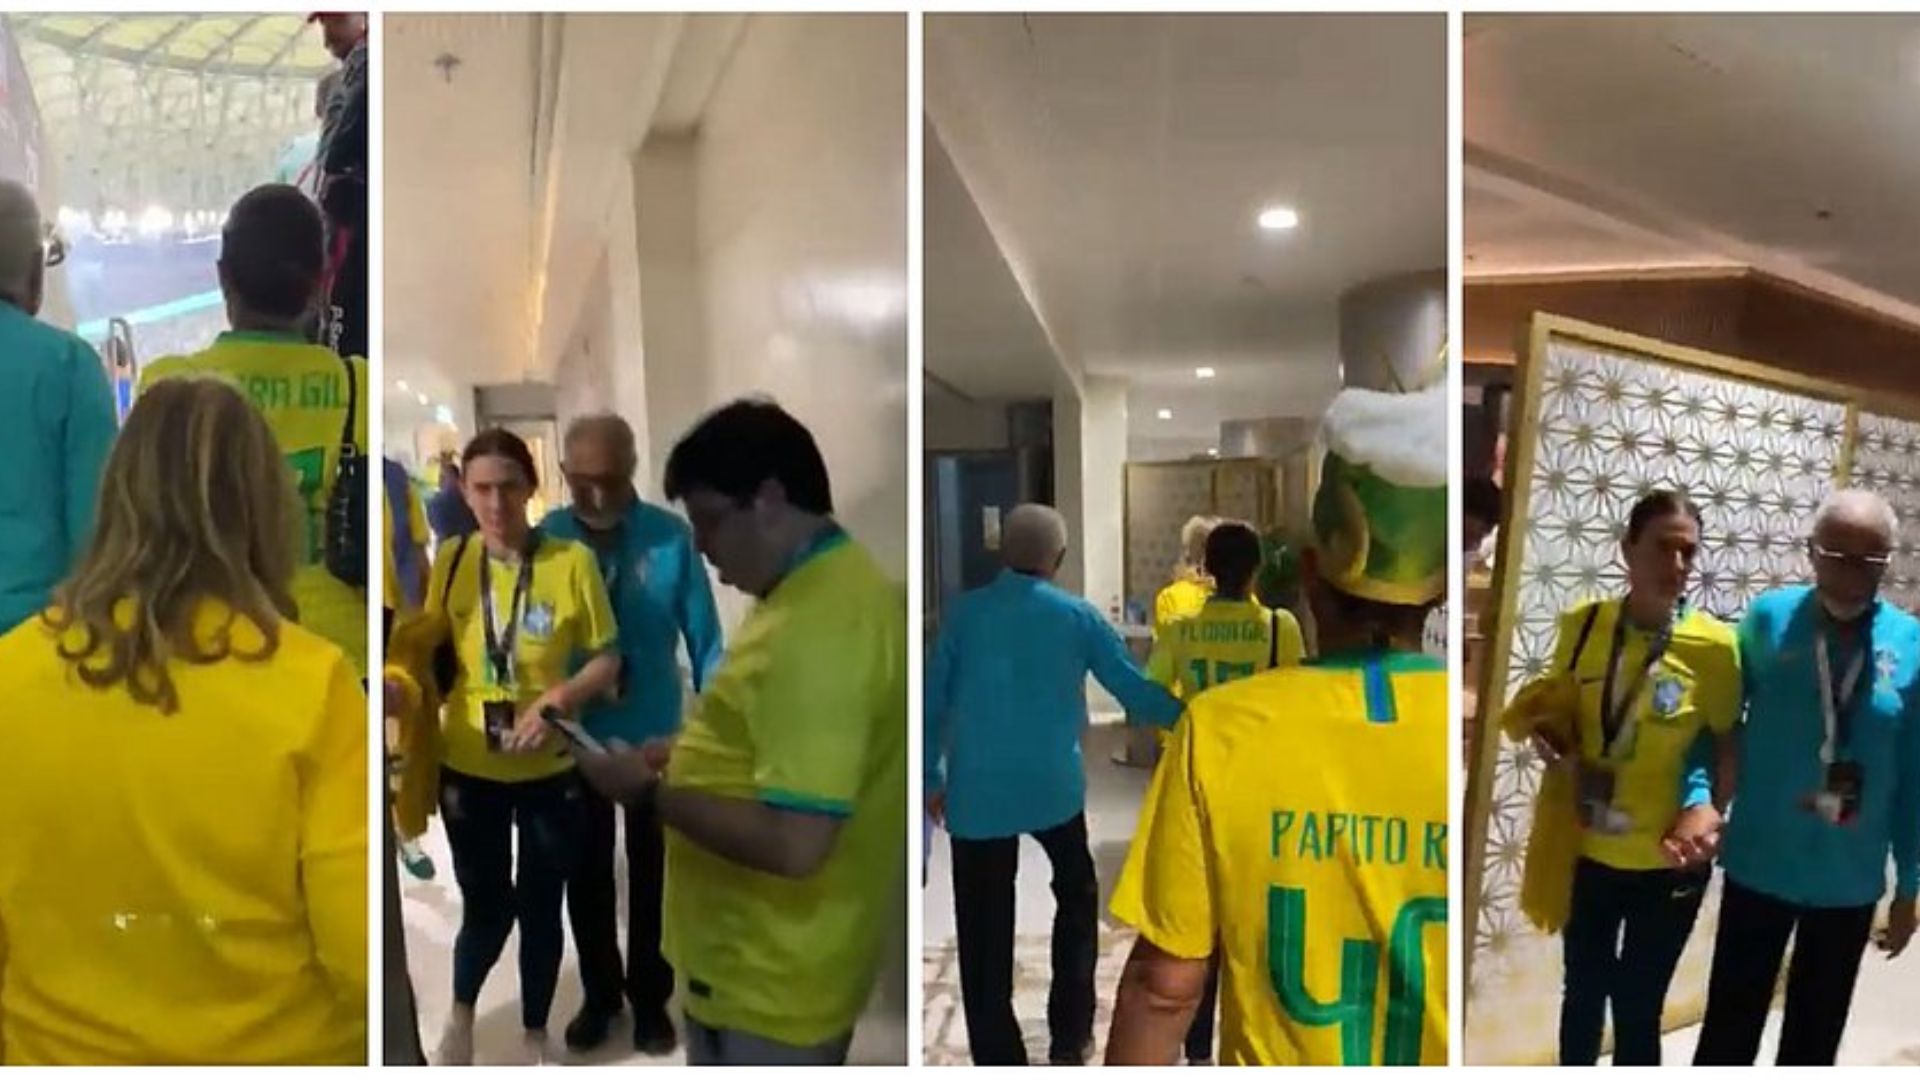 O cantor Gilberto Gil e a empresária Flora Gil foram hostilizados por torcedores brasileiros durante a Copa do Mundo no Catar | Foto: Repodrução/Correio24horas